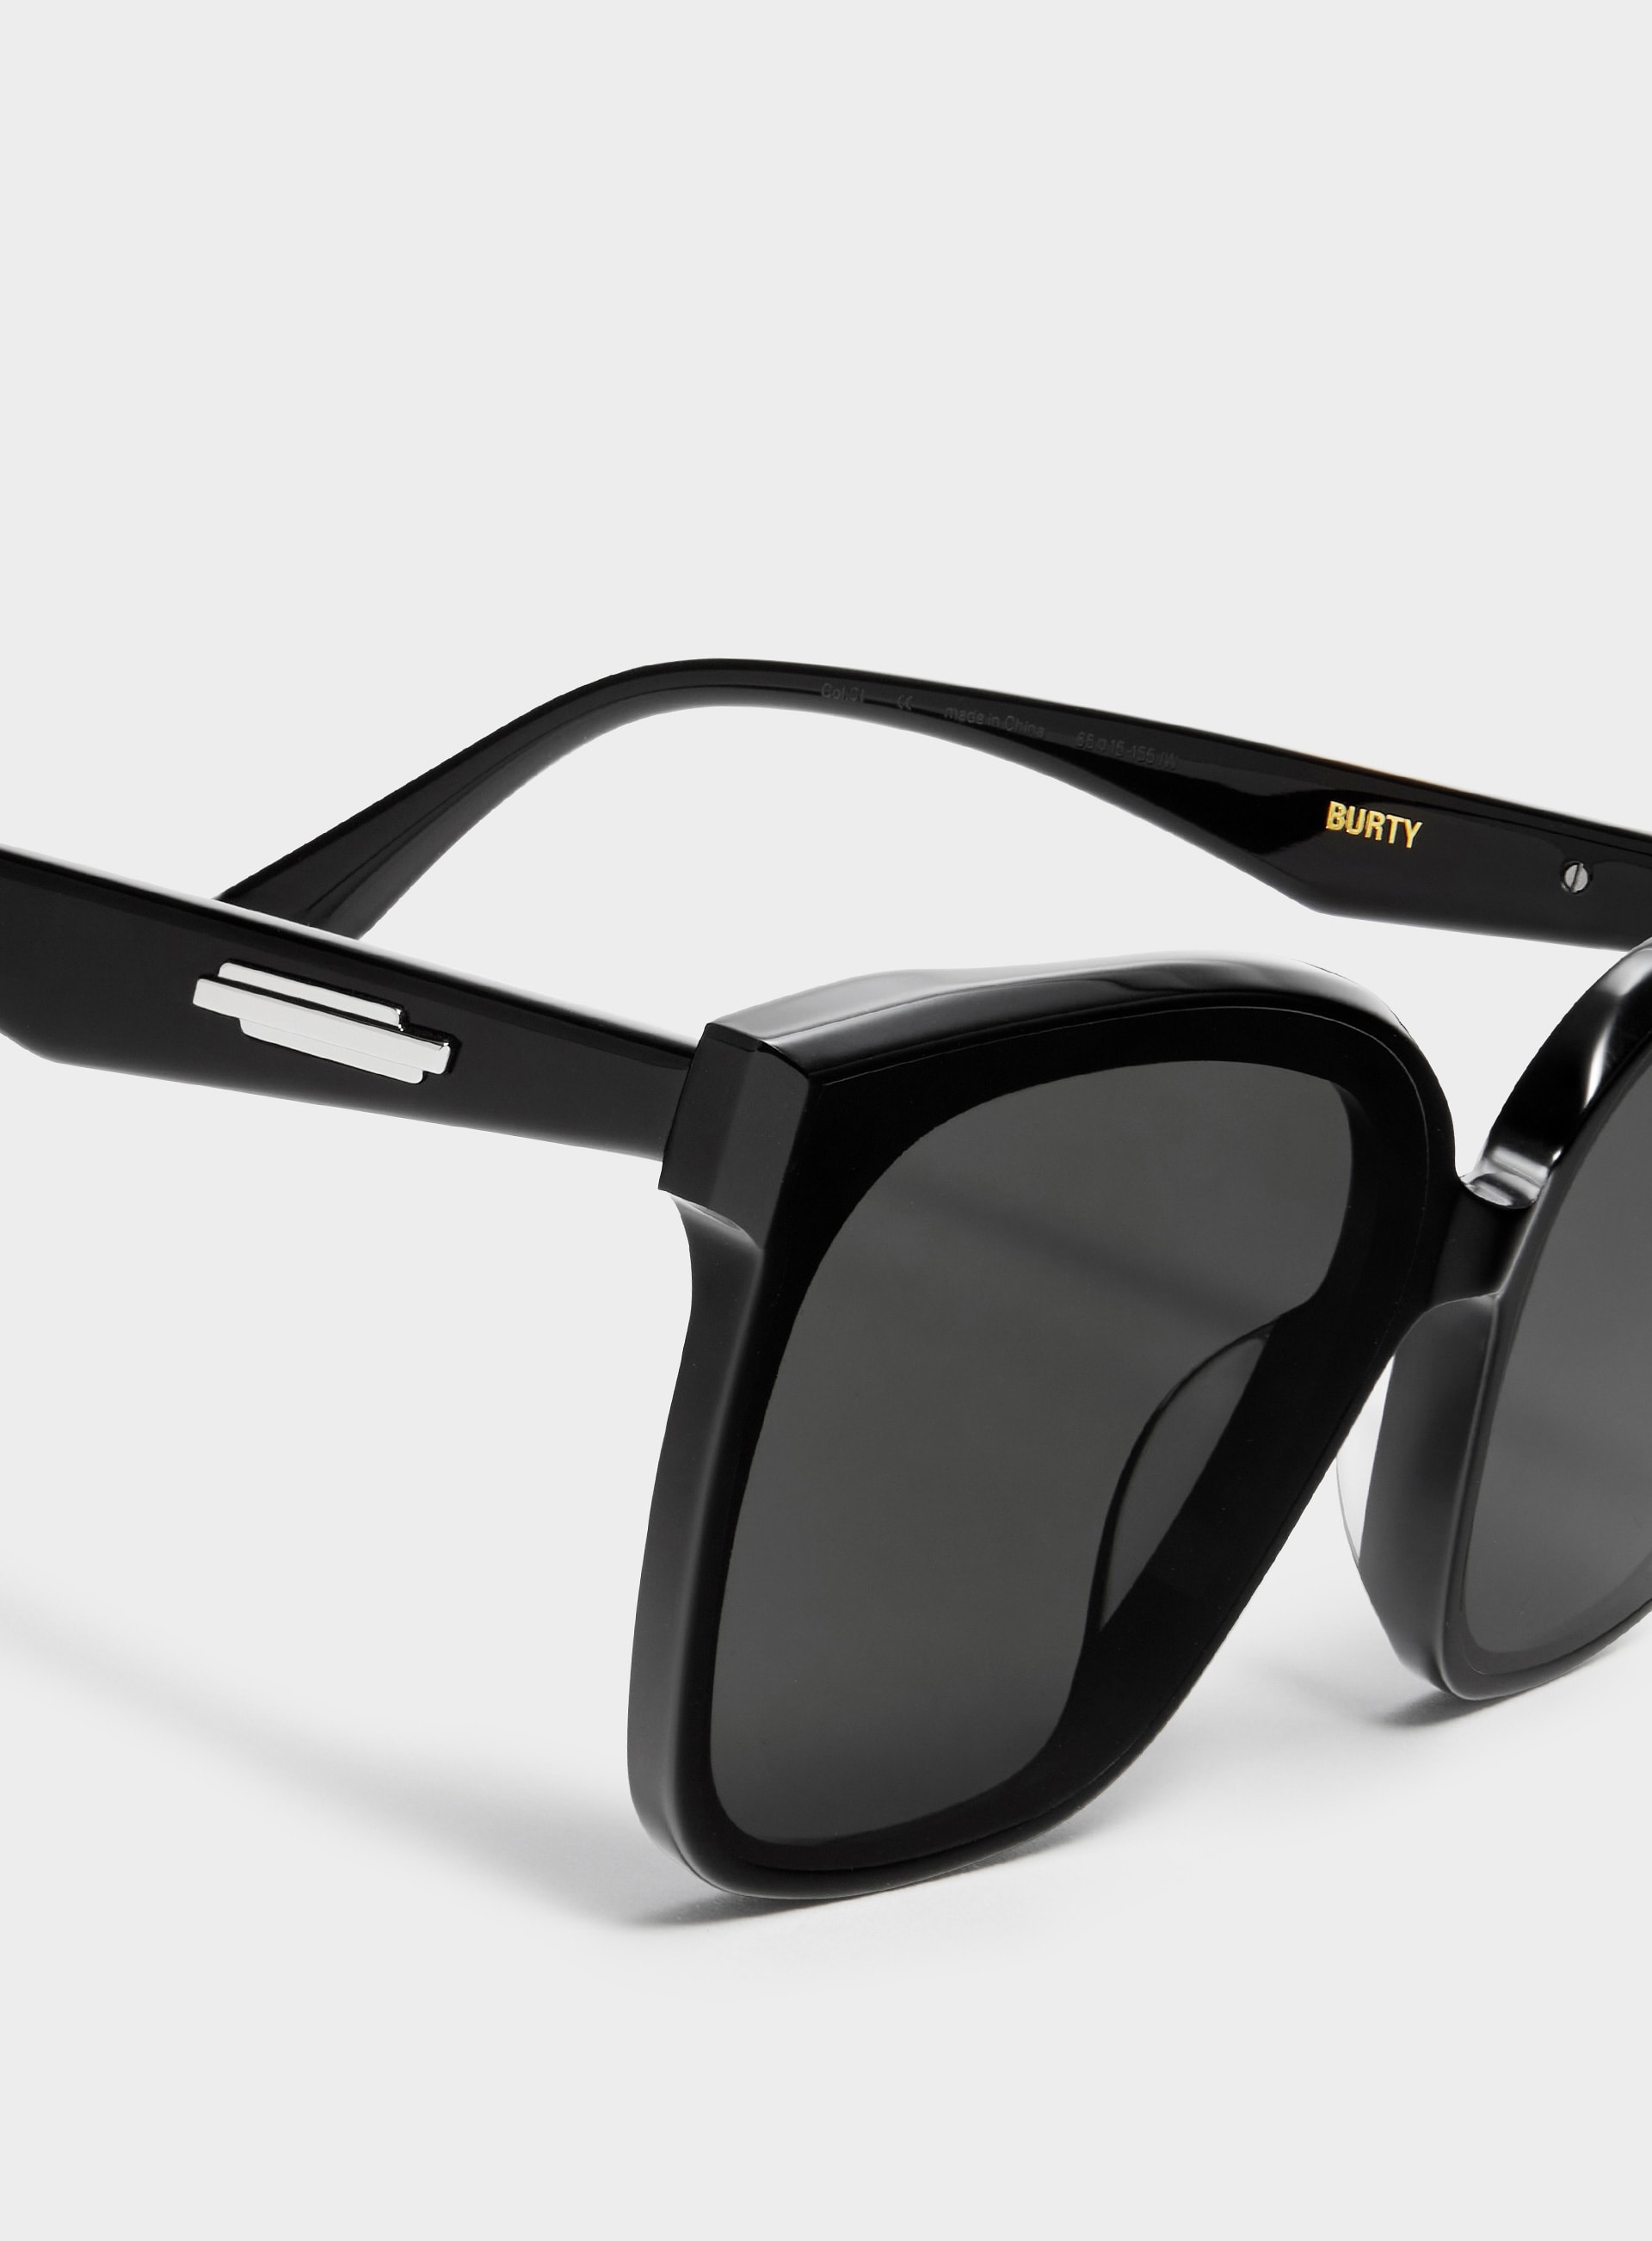 34％割引注文割引 [GENTLE MONSTER] Burty sunglasses サングラス アイウェア-WWW